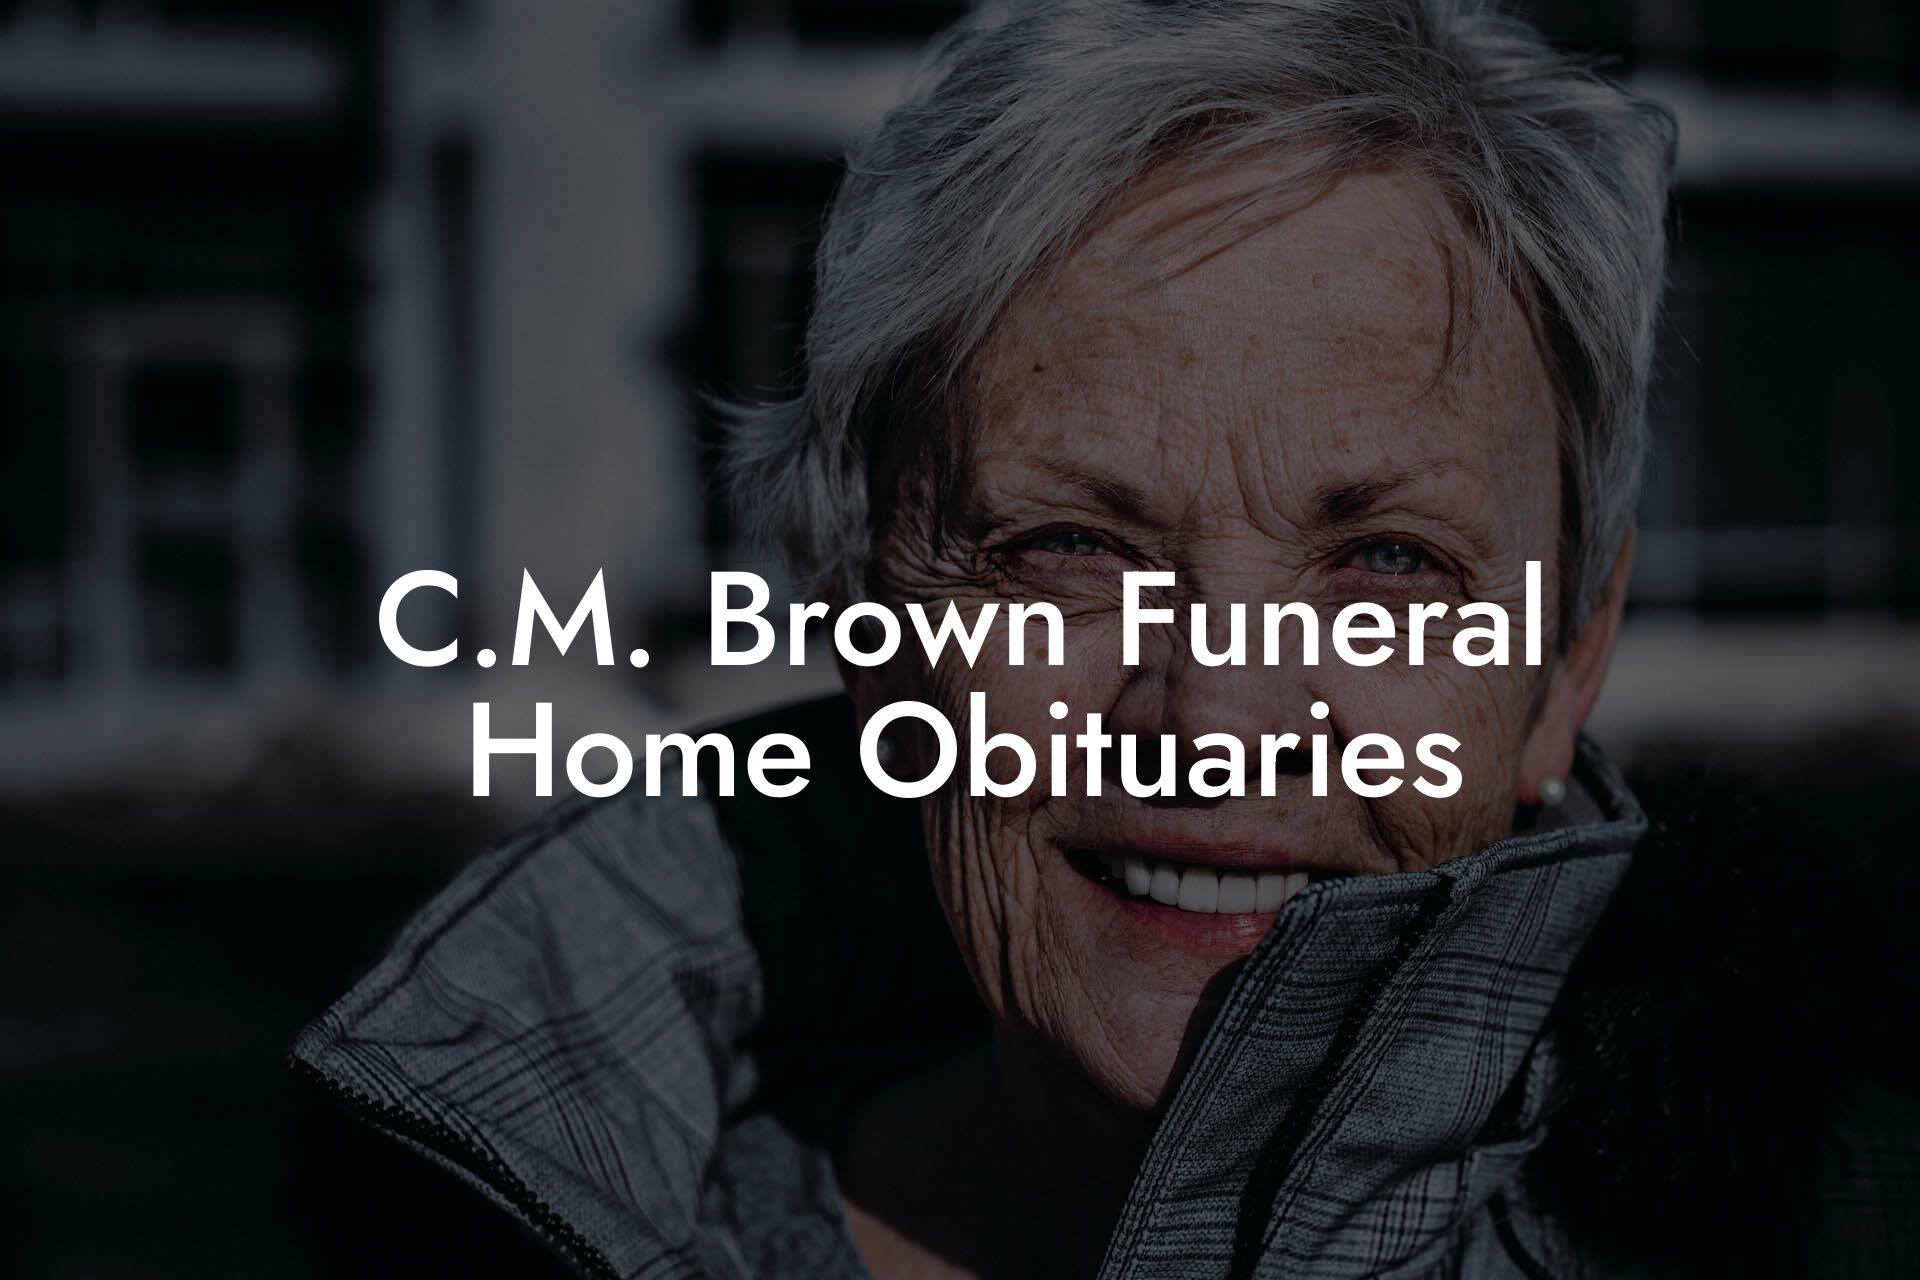 C.M. Brown Funeral Home Obituaries